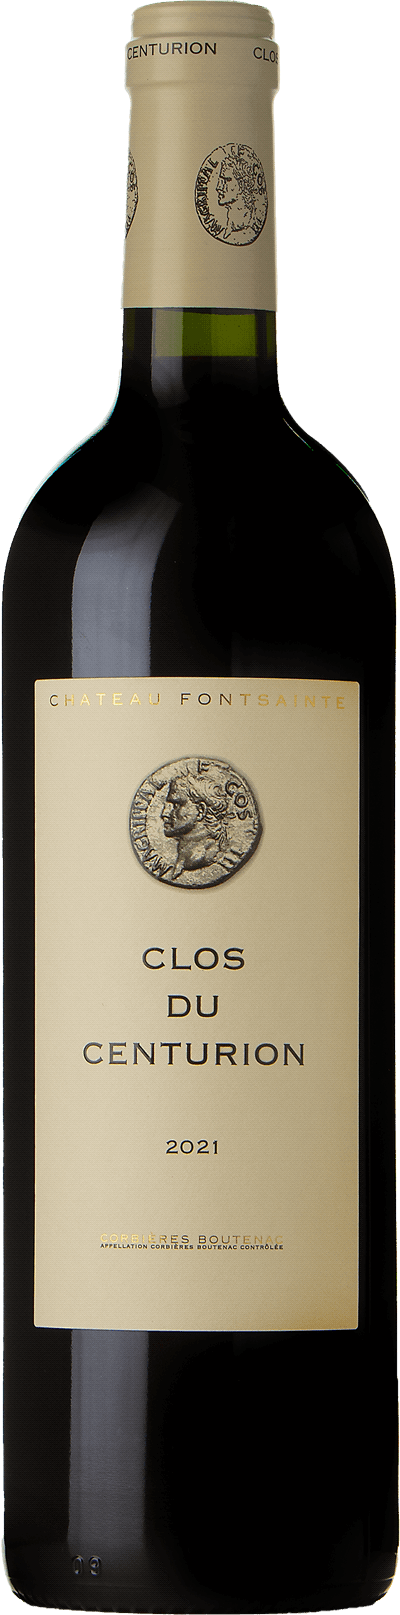 Clos du Centurion Domaine Fontsainte